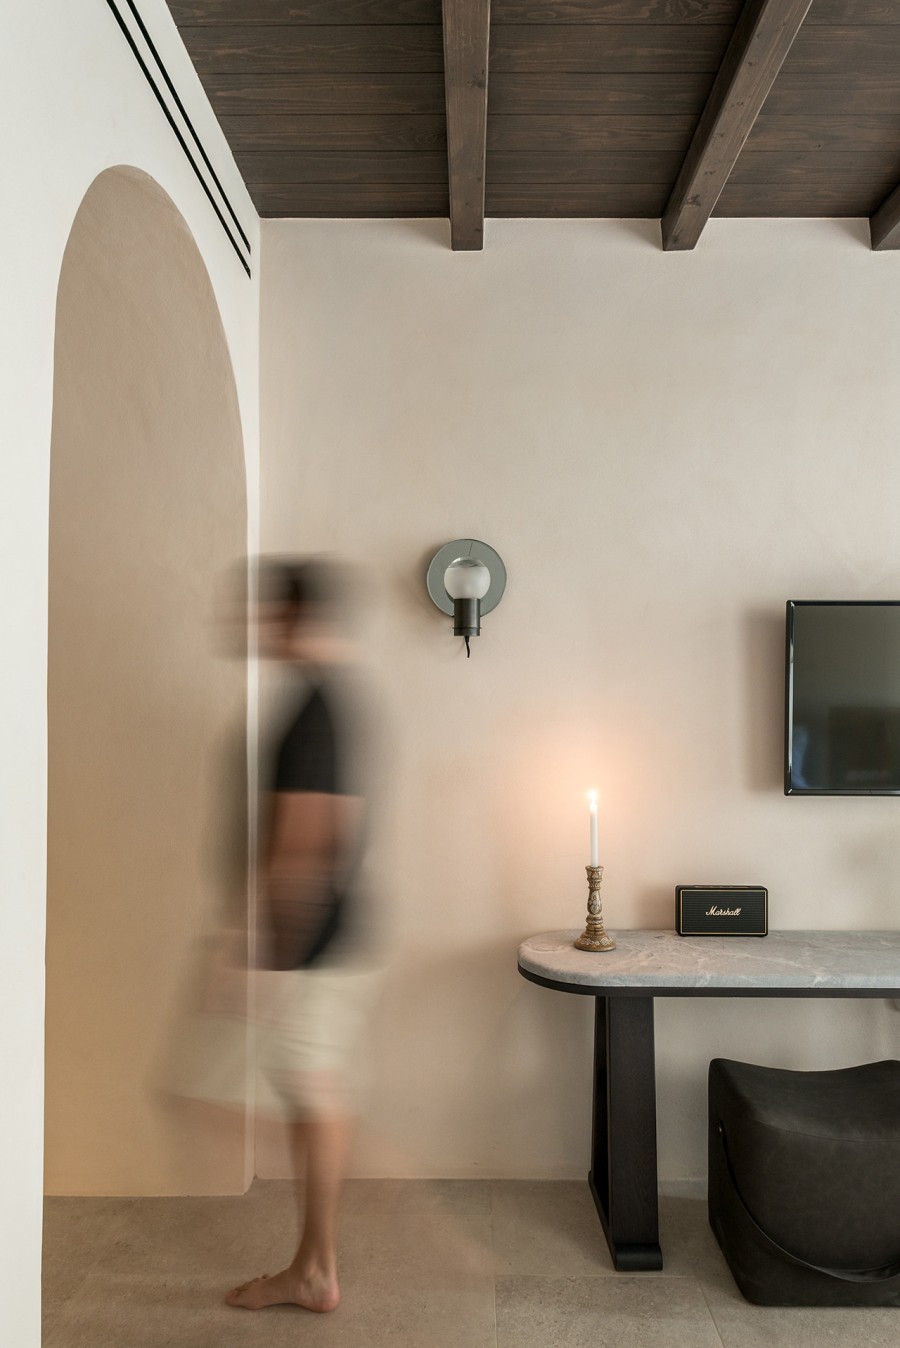 Οι αληθινές ιστορίες ανθρώπων εμπνέουν το νέο Ιstoria hotel στη Σαντορίνη- Φωτογραφία 8